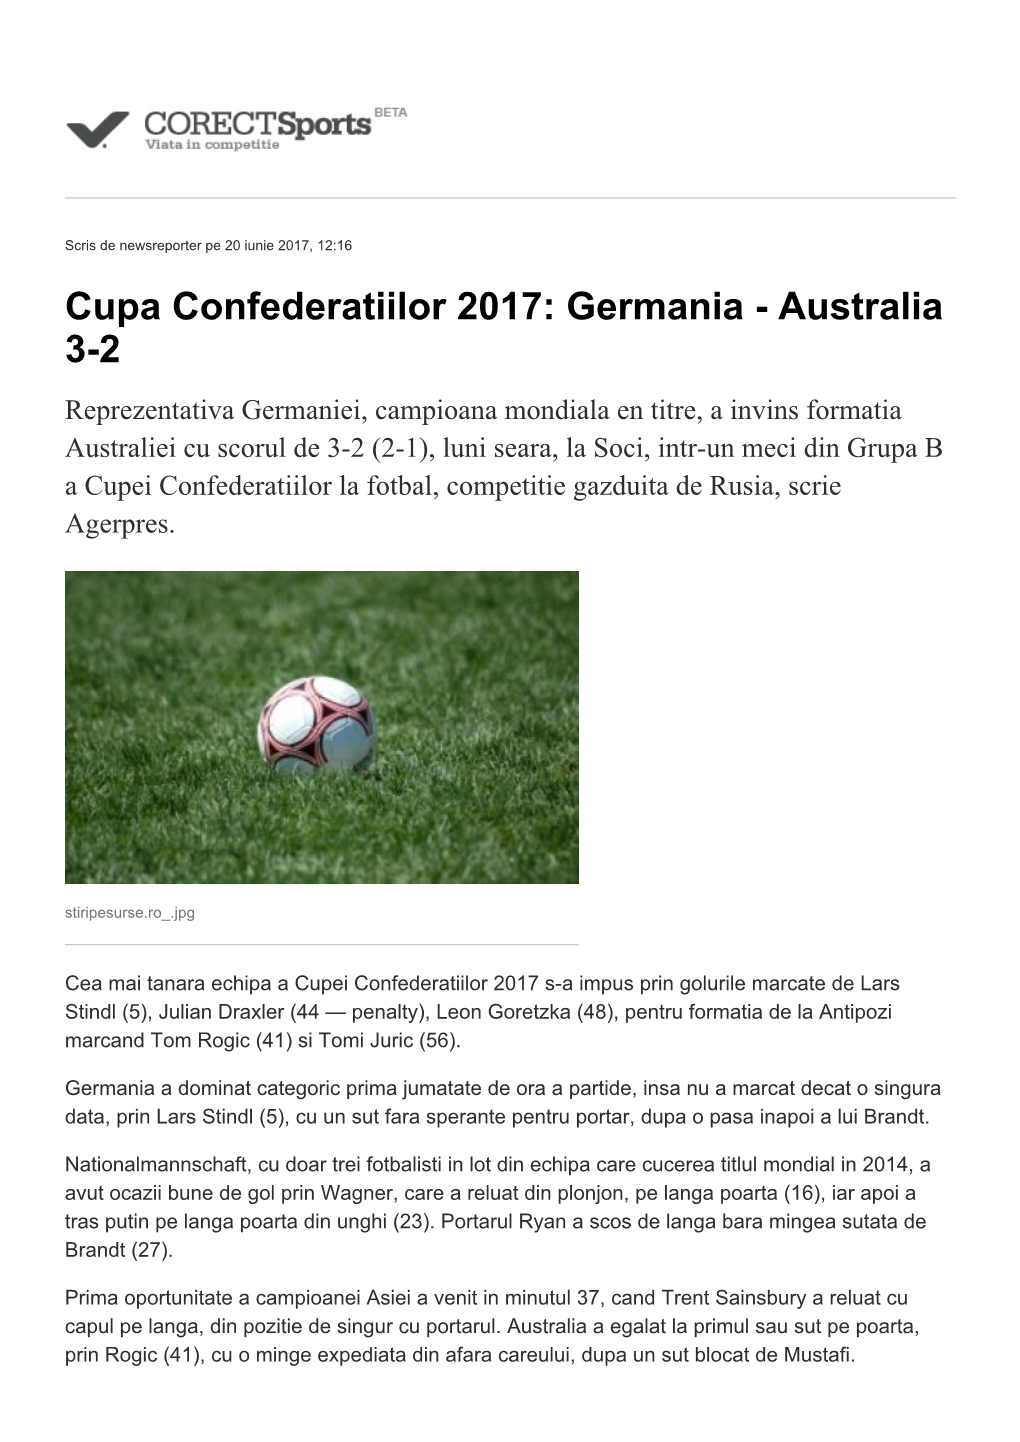 Cupa Confederatiilor 2017: Germania